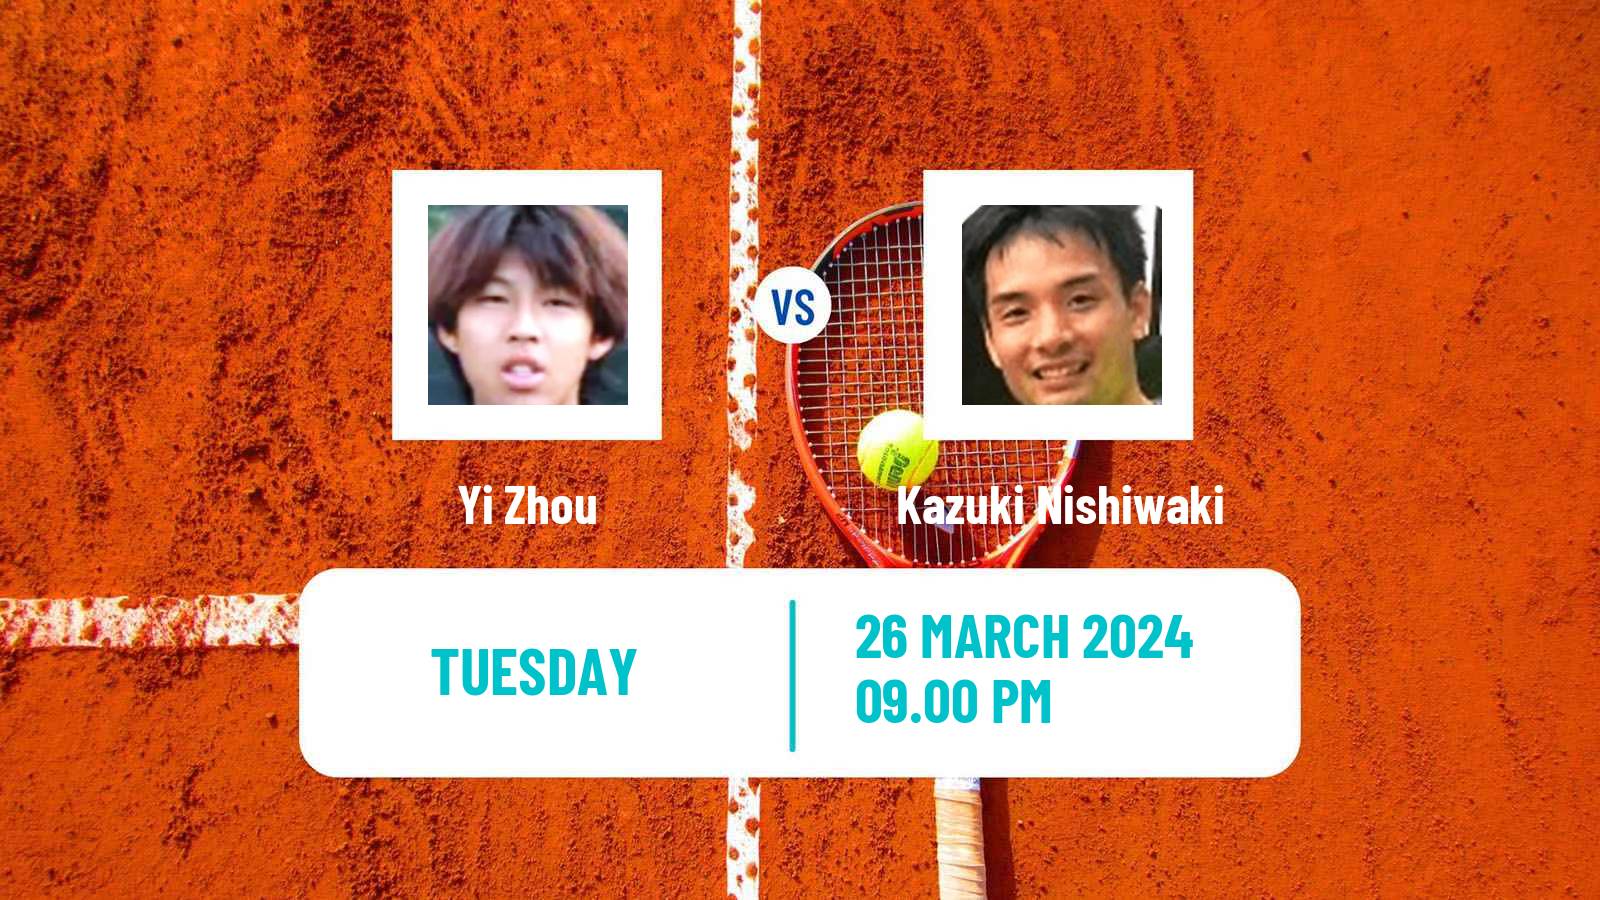 Tennis ITF M15 Tsukuba Men Yi Zhou - Kazuki Nishiwaki